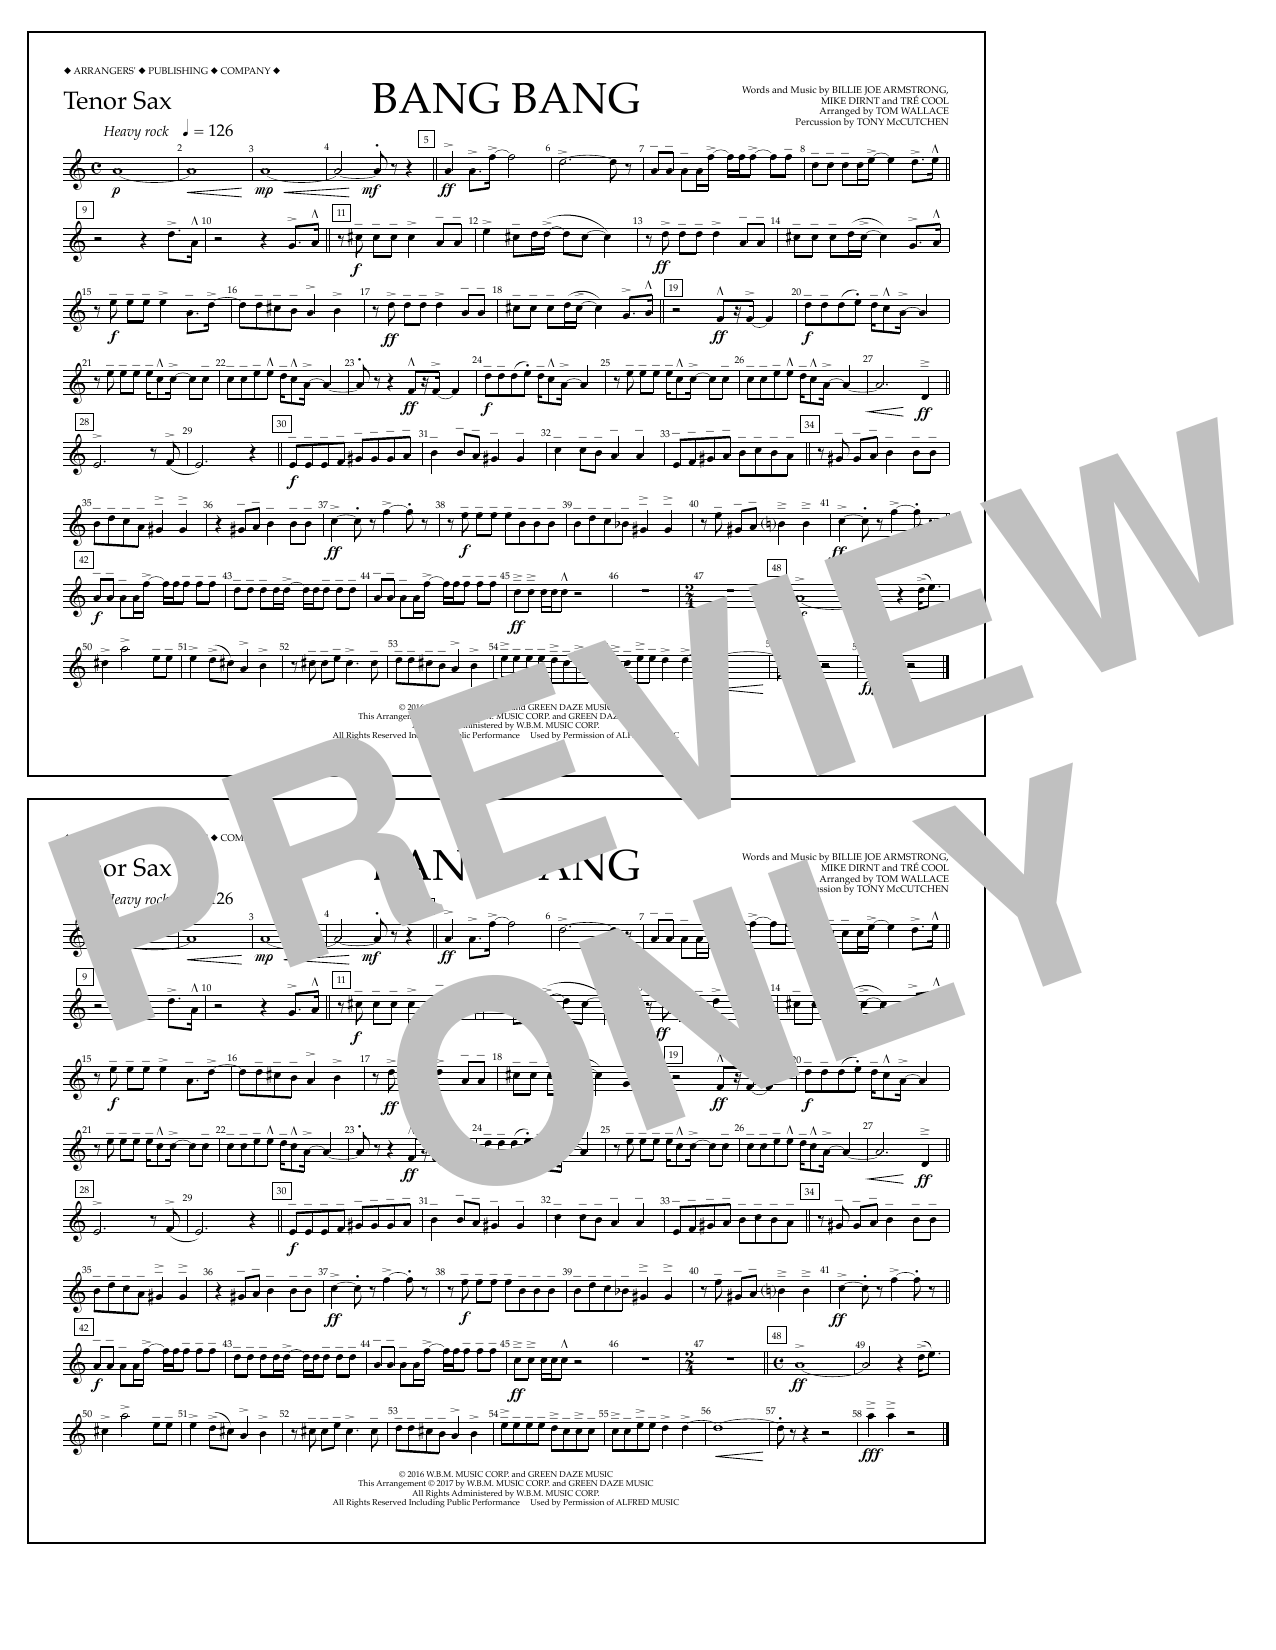 Tom Wallace Bang Bang - Tenor Sax Sheet Music Notes & Chords for Marching Band - Download or Print PDF